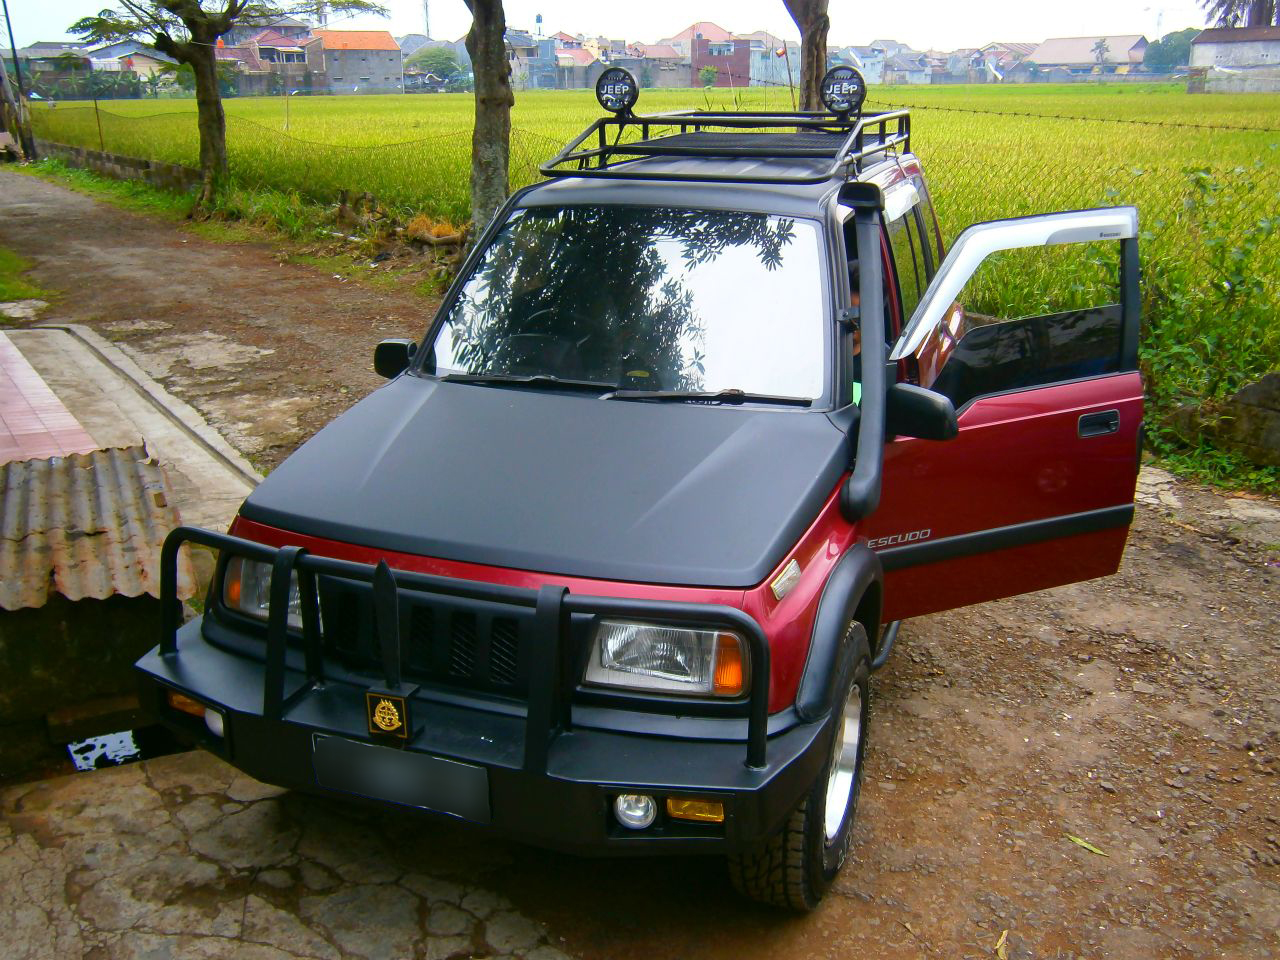 Foto Modifikasi Mobil Suzuki Escudo  Modifikasi Style